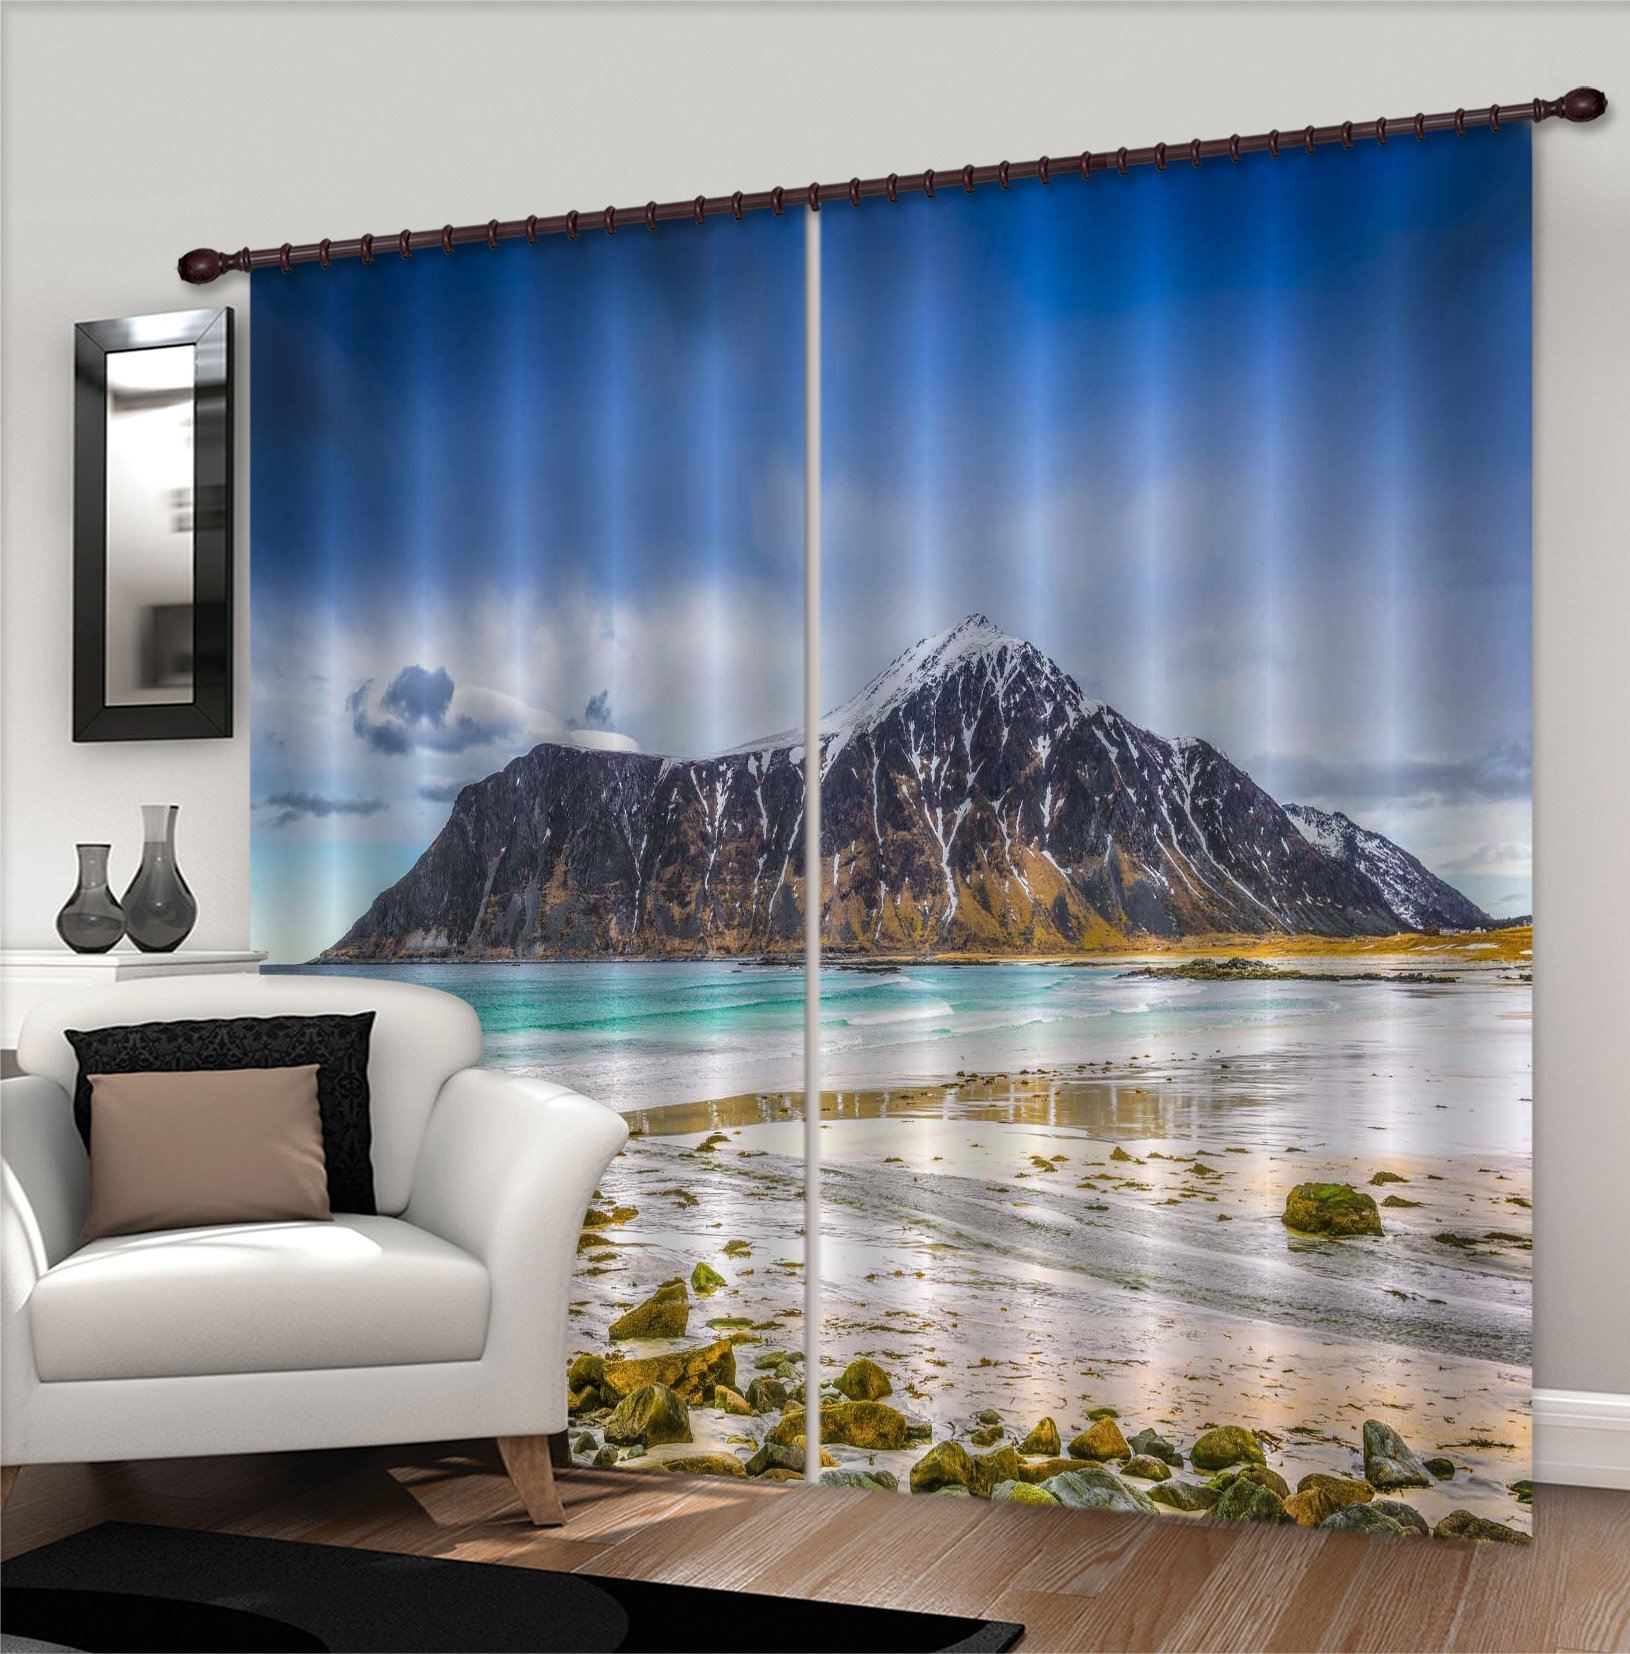 3D Beach Island 145 Marco Carmassi Curtain Curtains Drapes Curtains AJ Creativity Home 